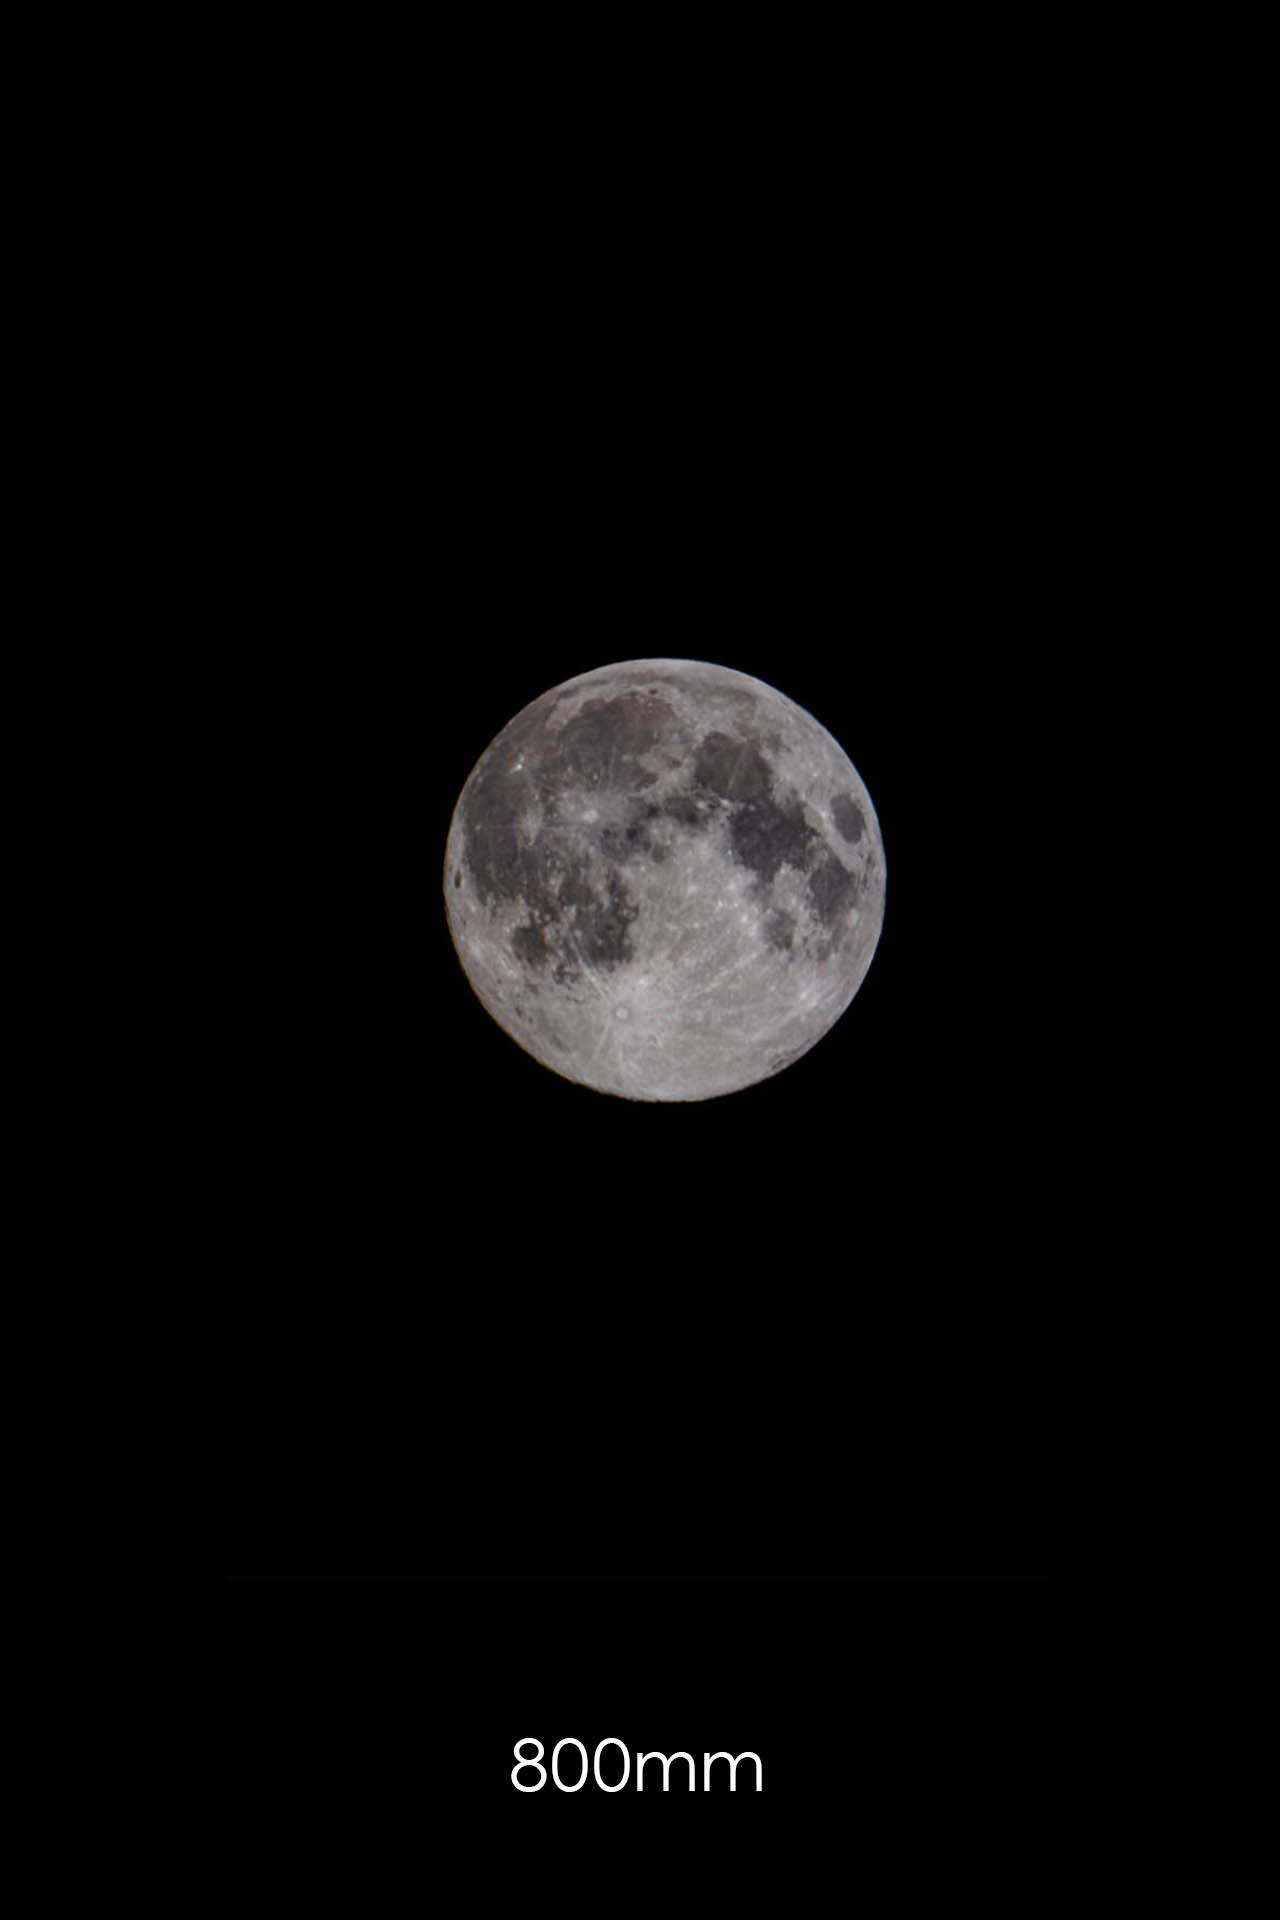 Mond mit 800mm Brennweite fotografiert